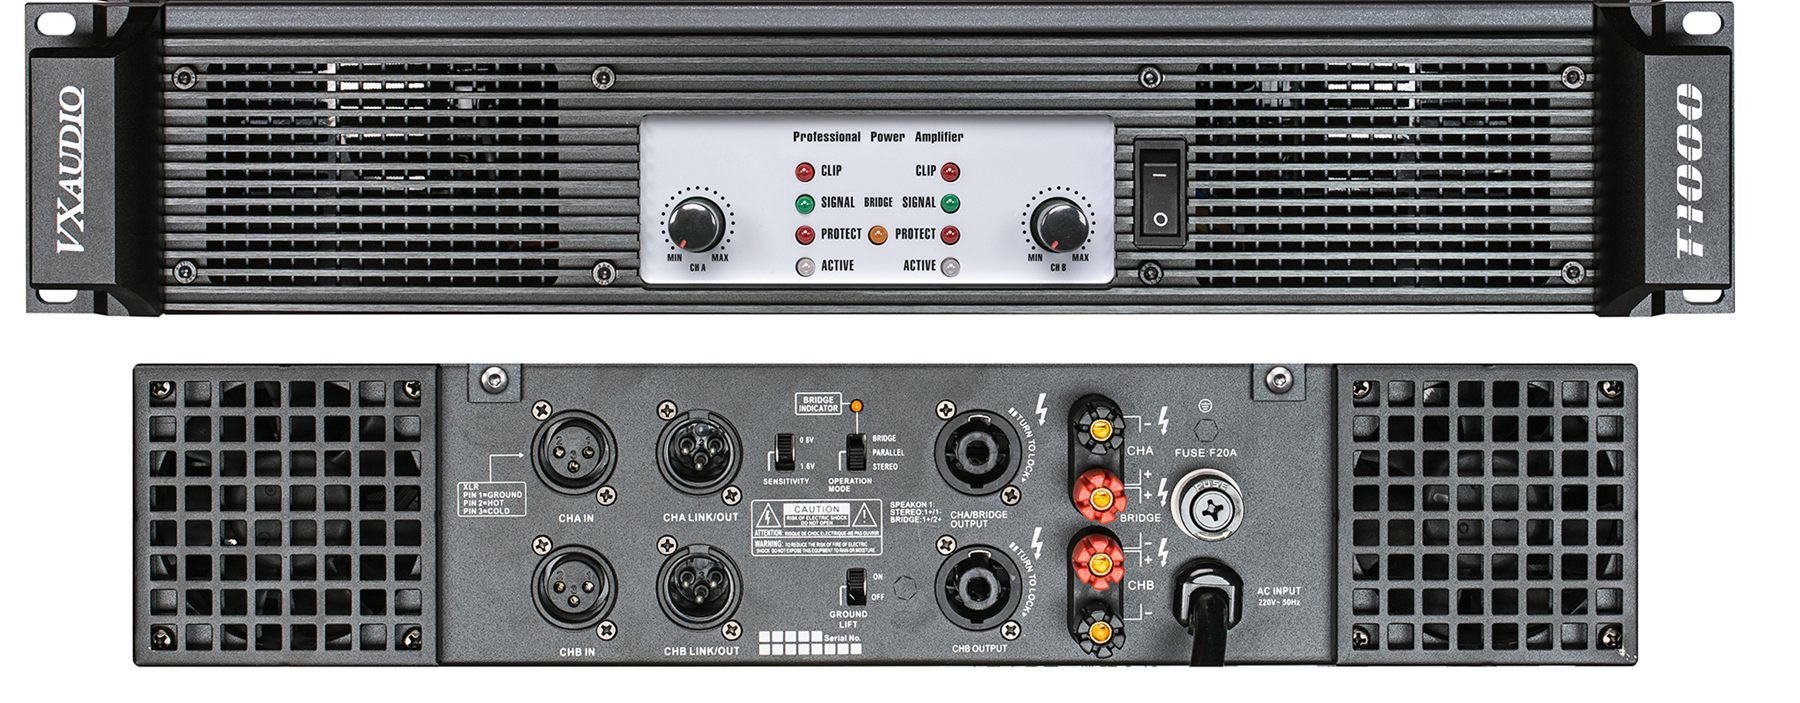 2u Performance Power Amplifier T-1000